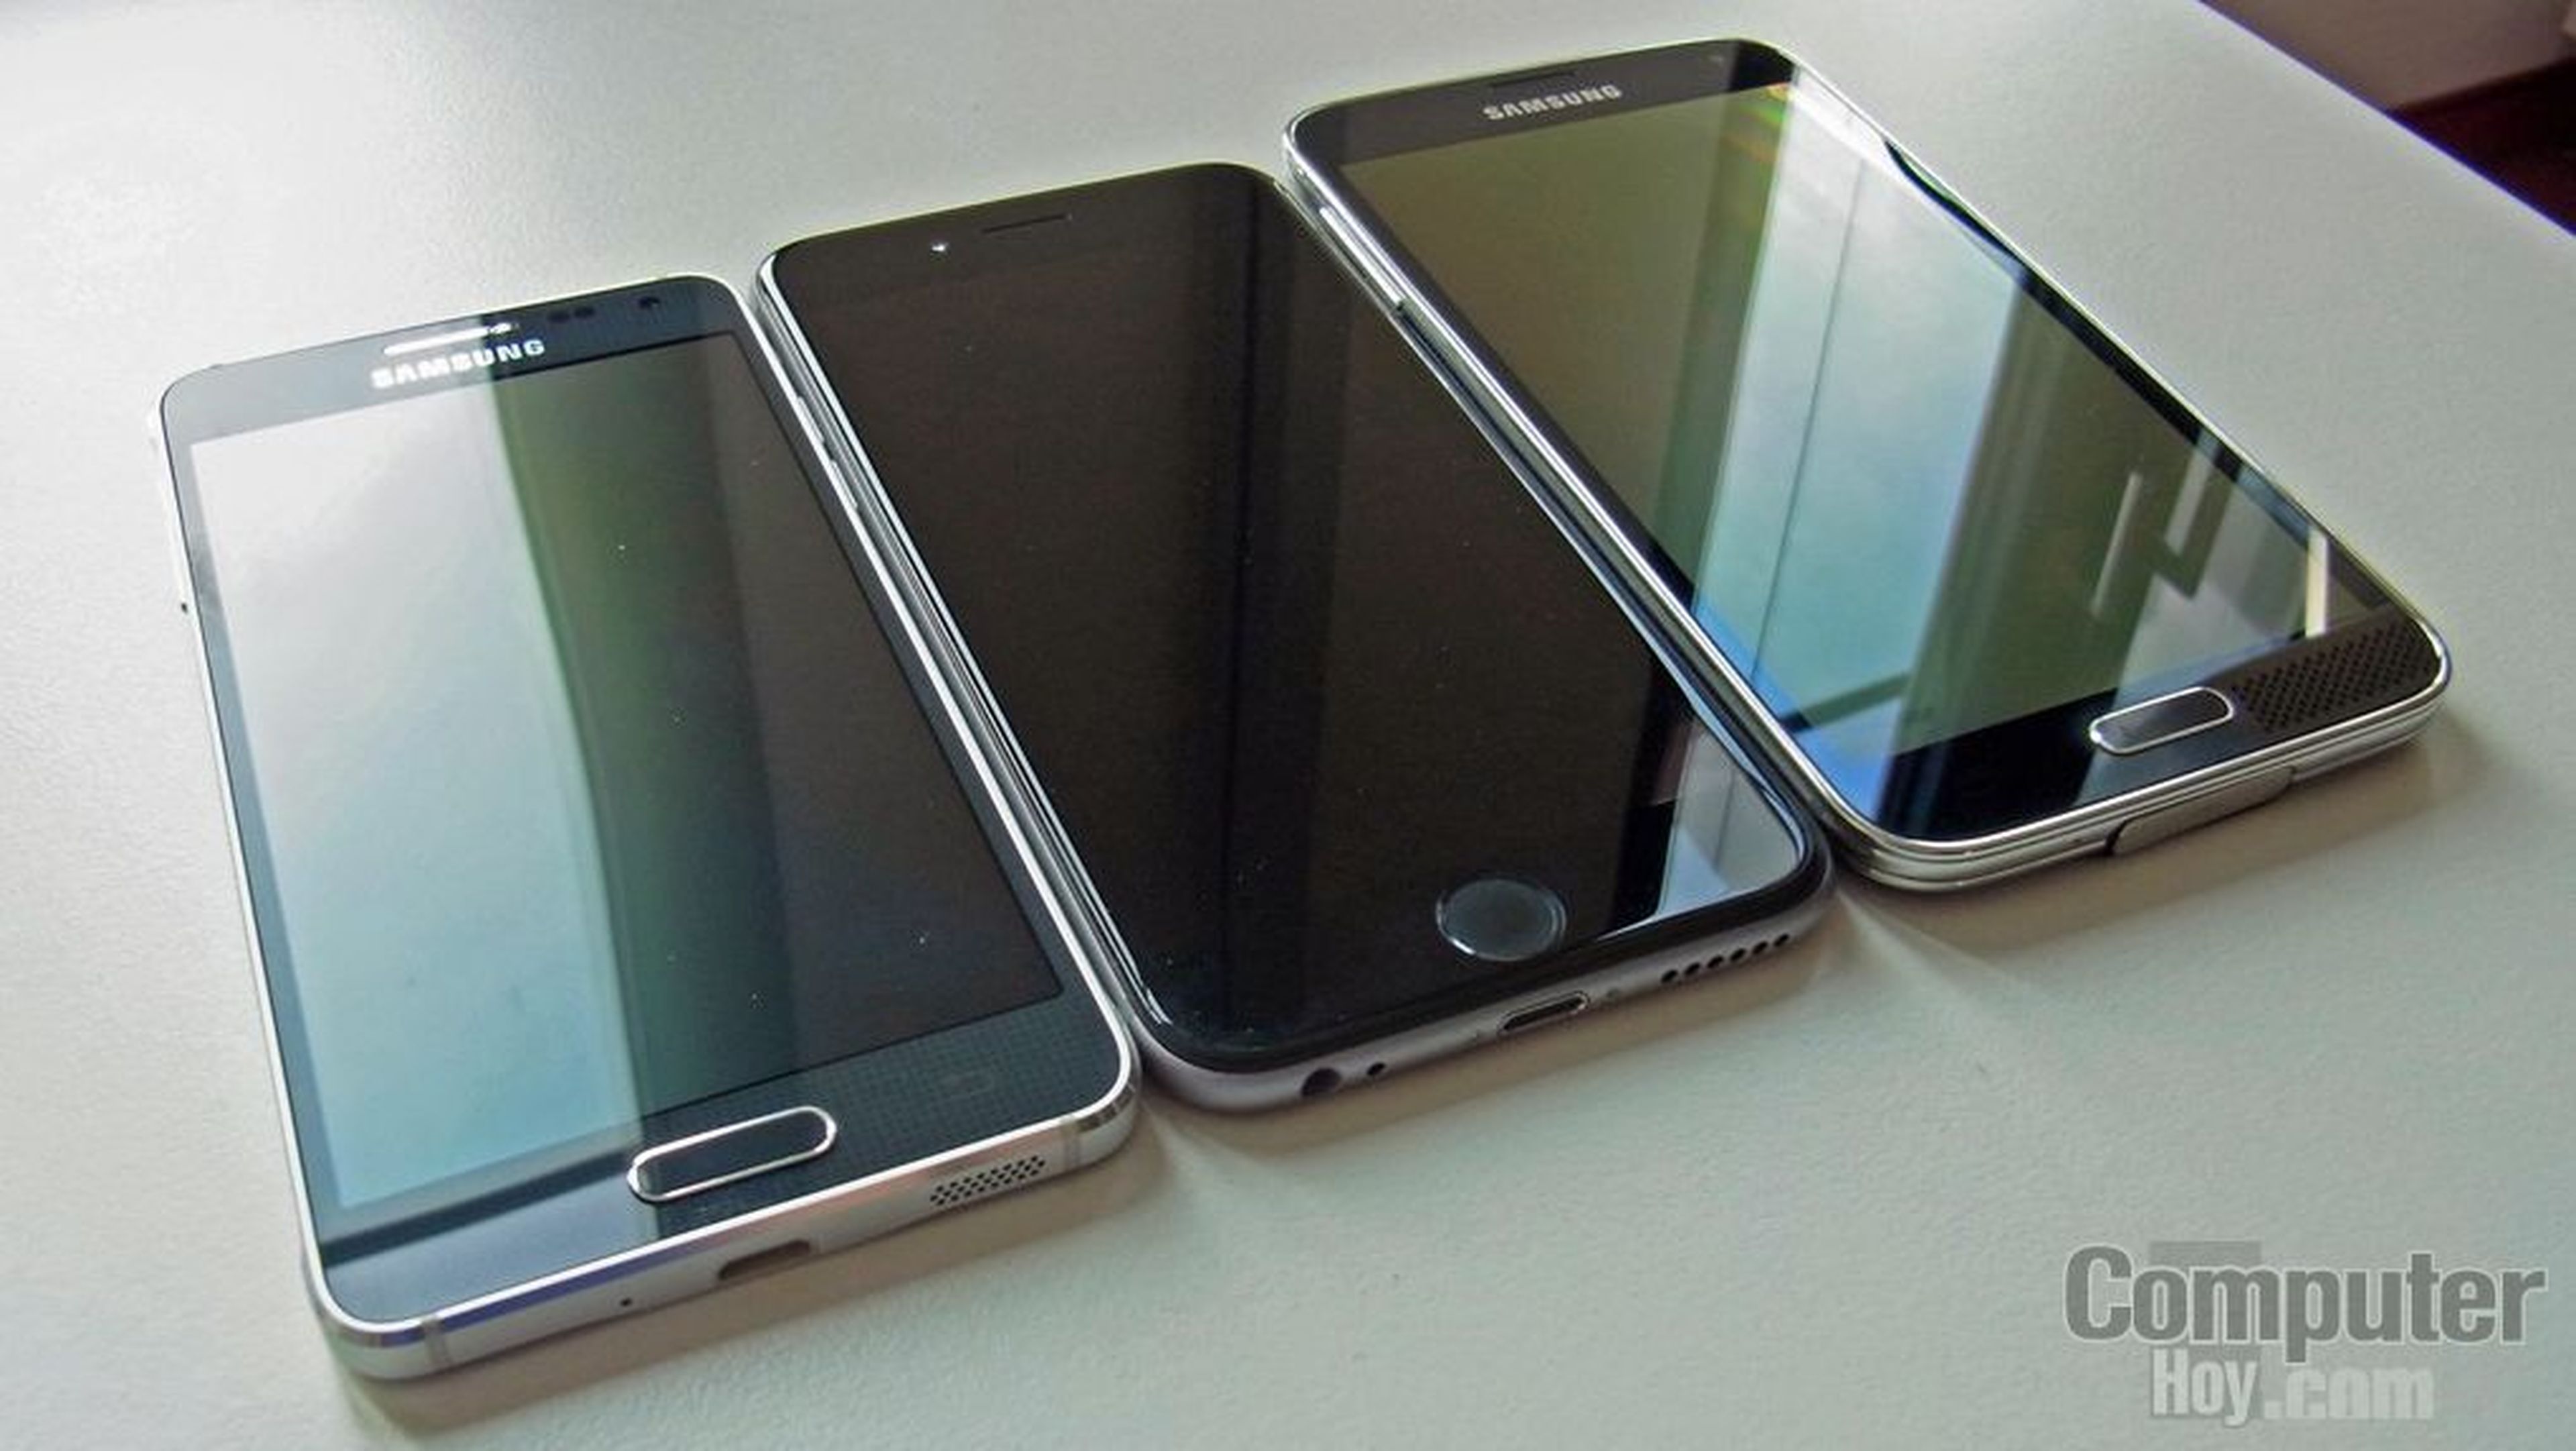 Samsung Galaxy Alpha comparado con Apple iPhone 6 y Samsung Galaxy S5